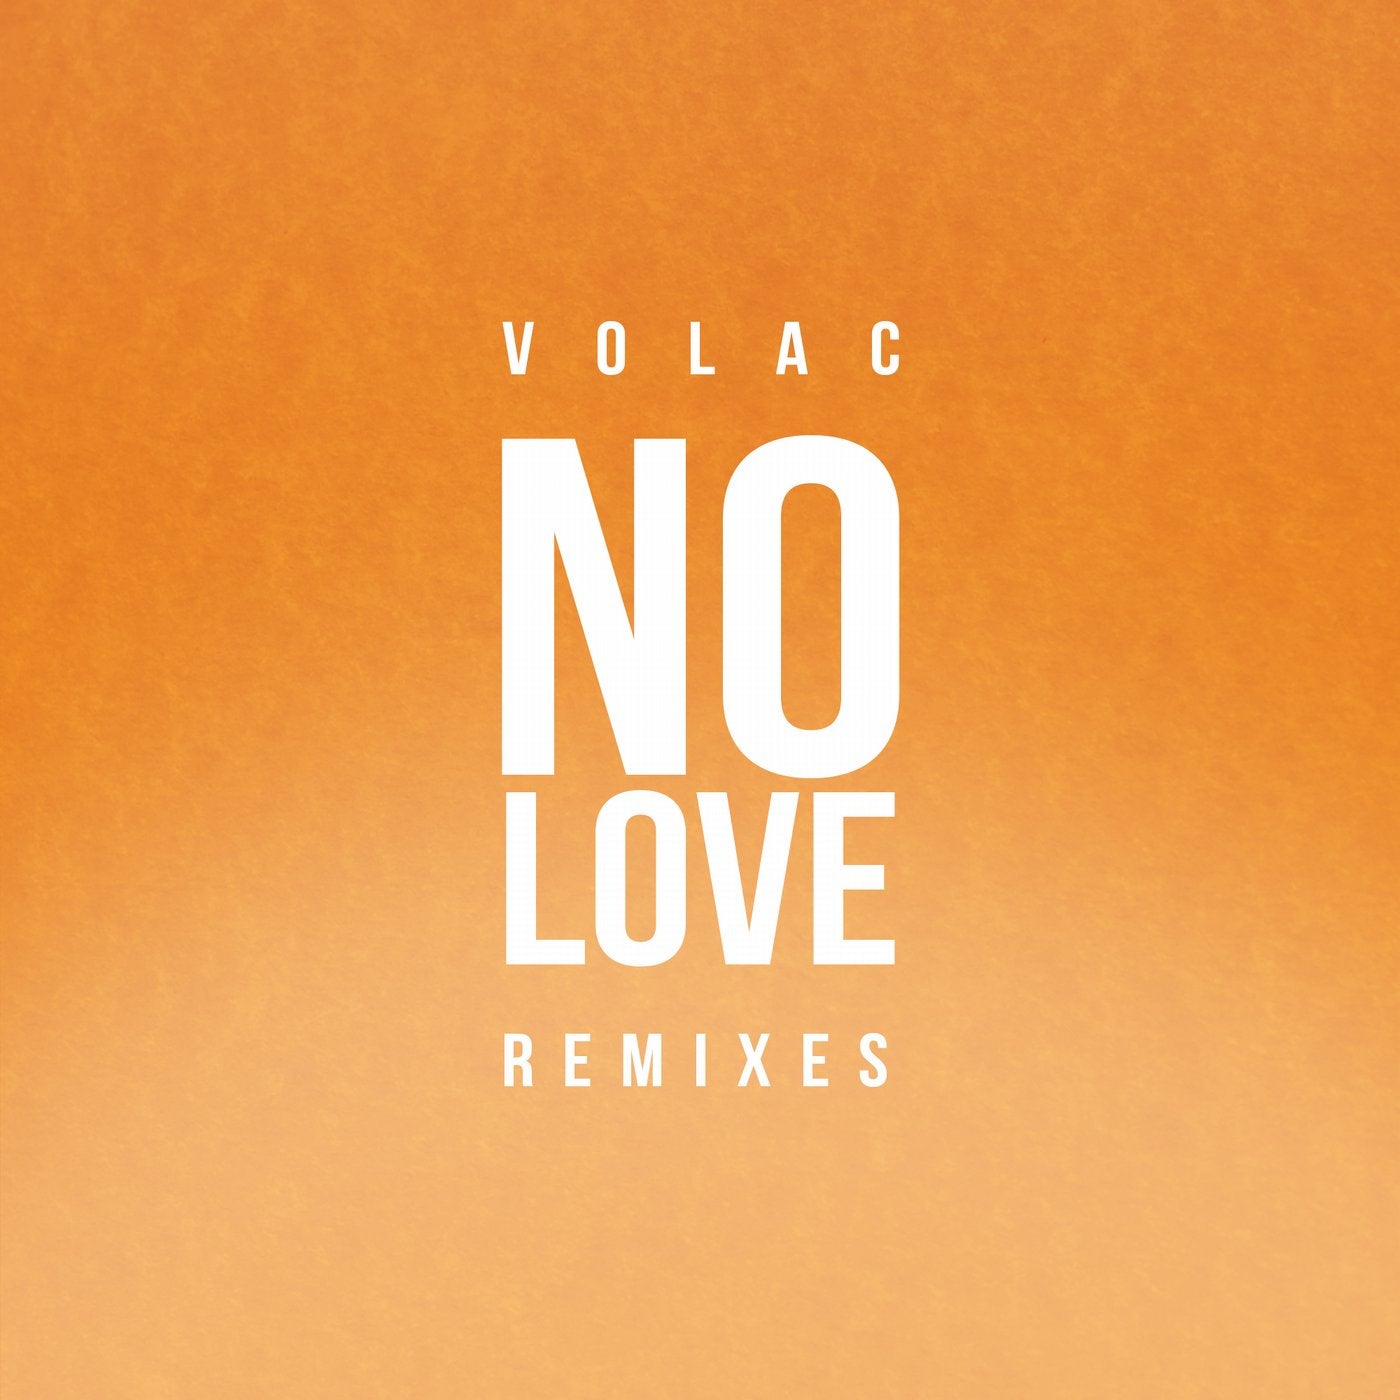 Фото no Love. Volac. Love Remix. Volac обложки альбома. Джей лов